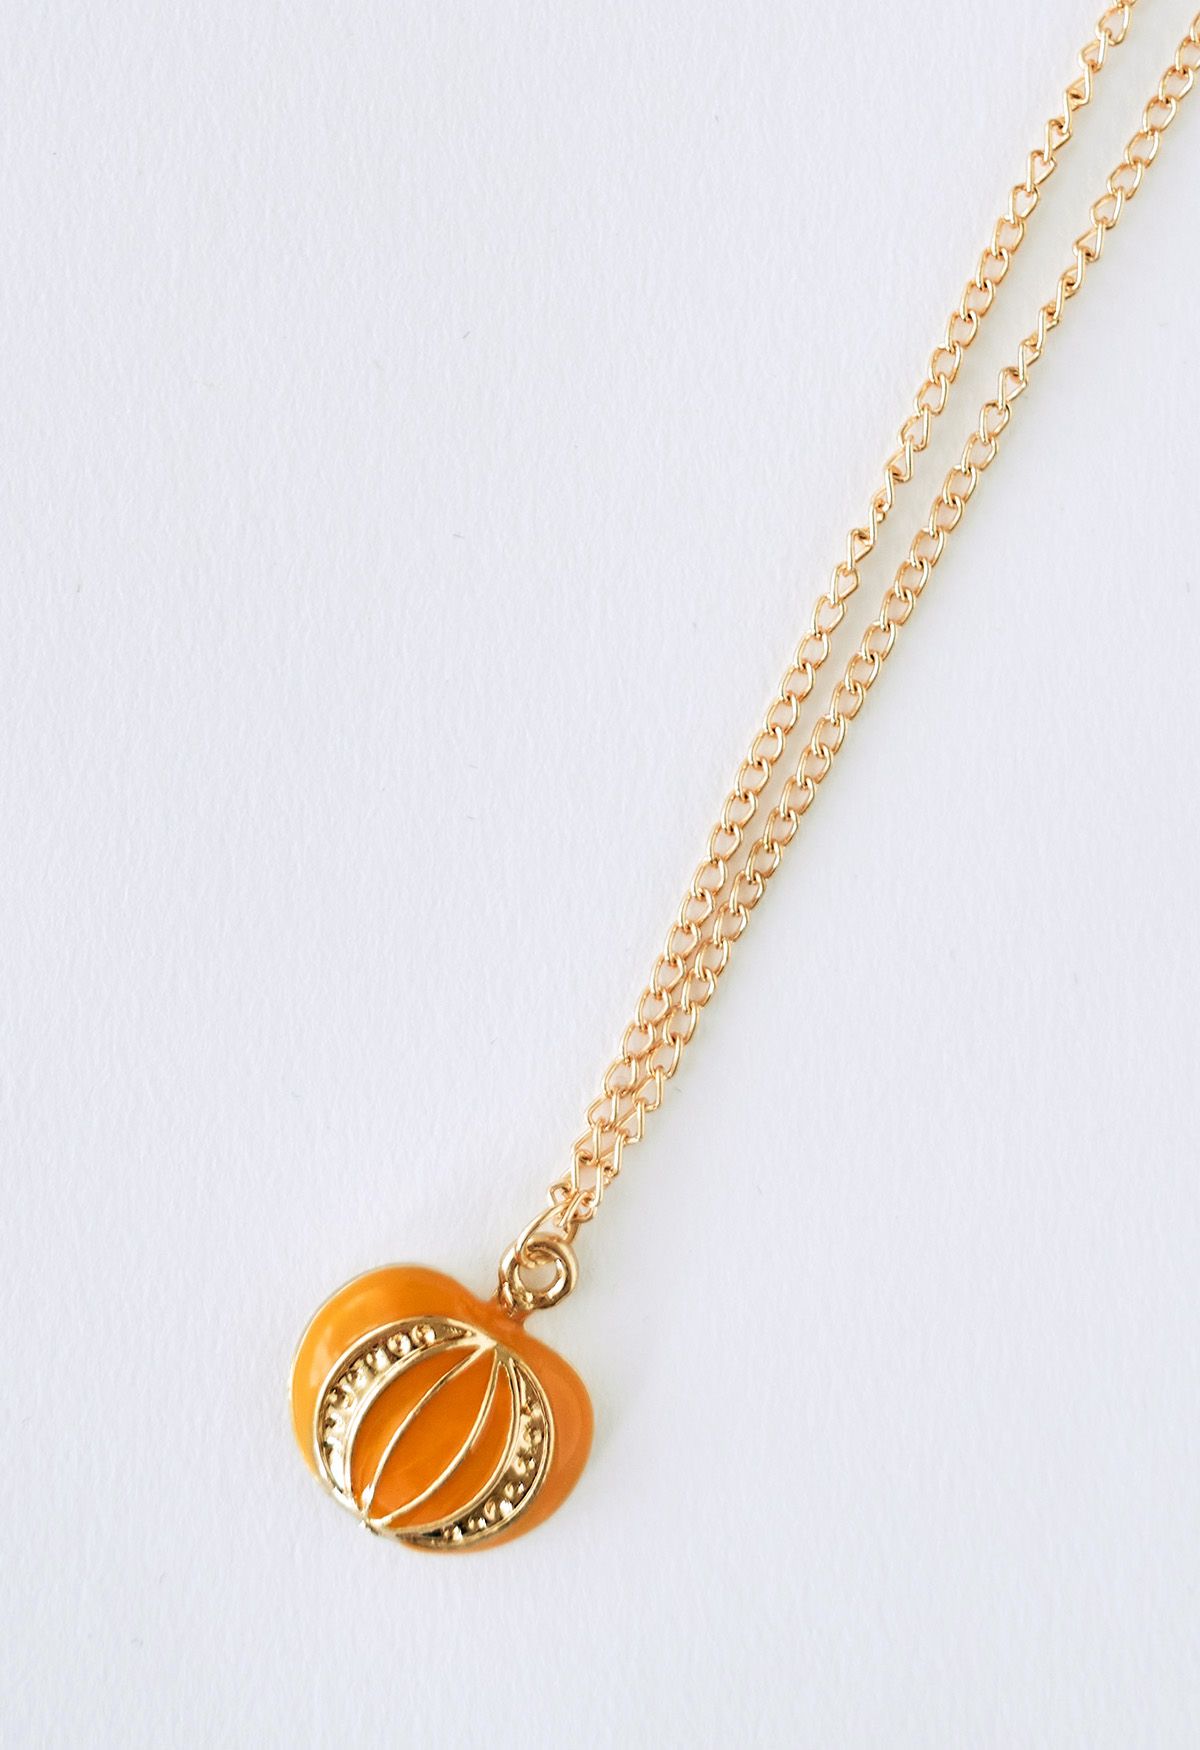 Crown Pumpkin Pendant Necklace